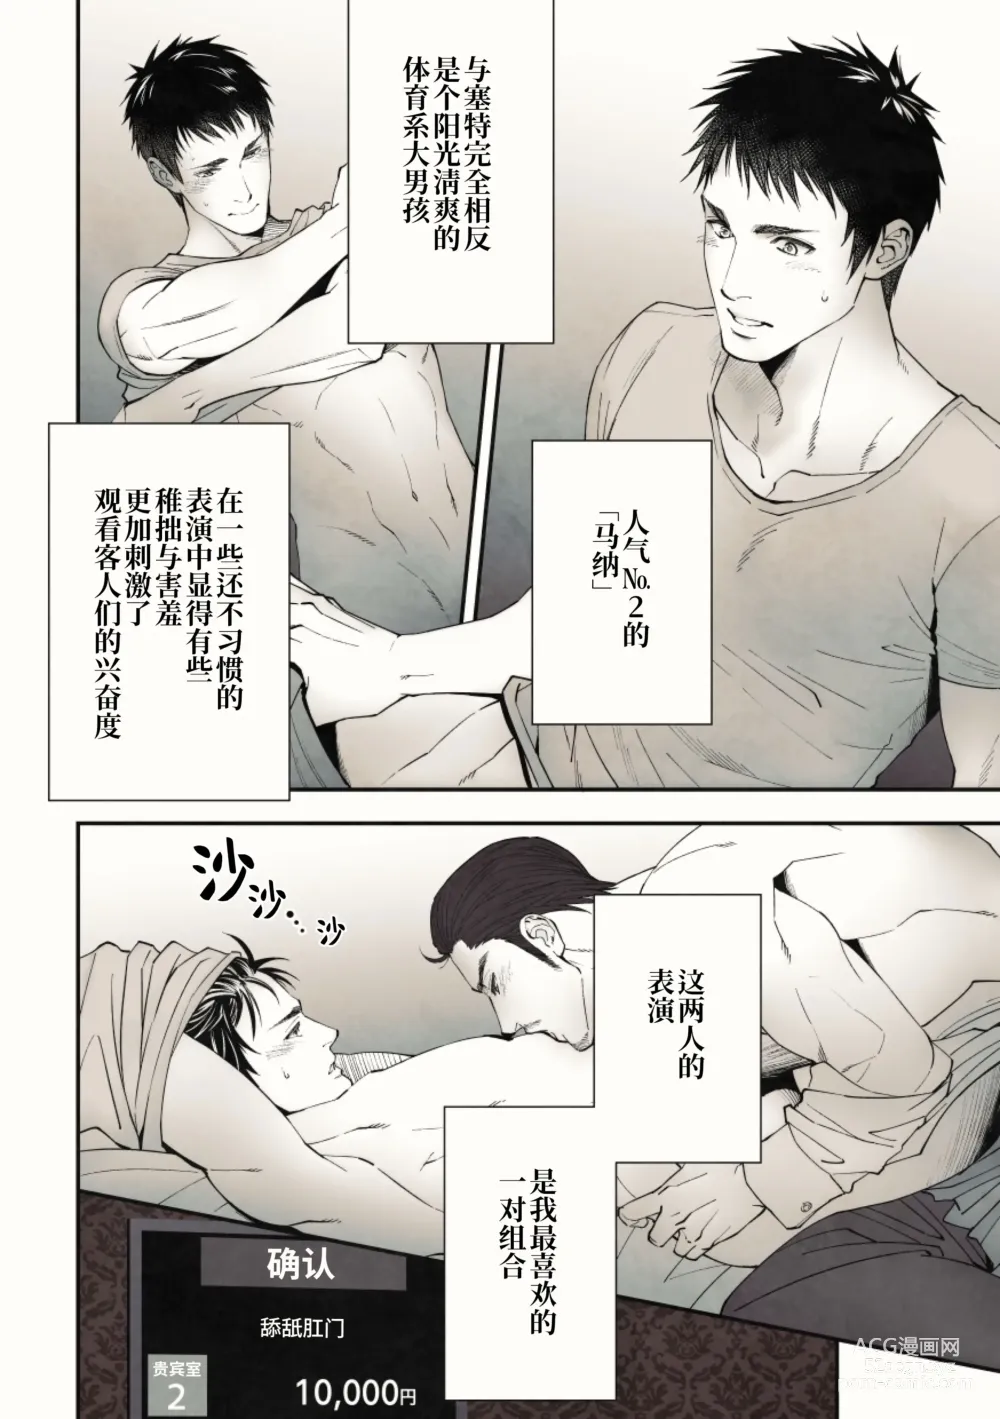 Page 10 of doujinshi 偷窥贵宾室 (decensored)